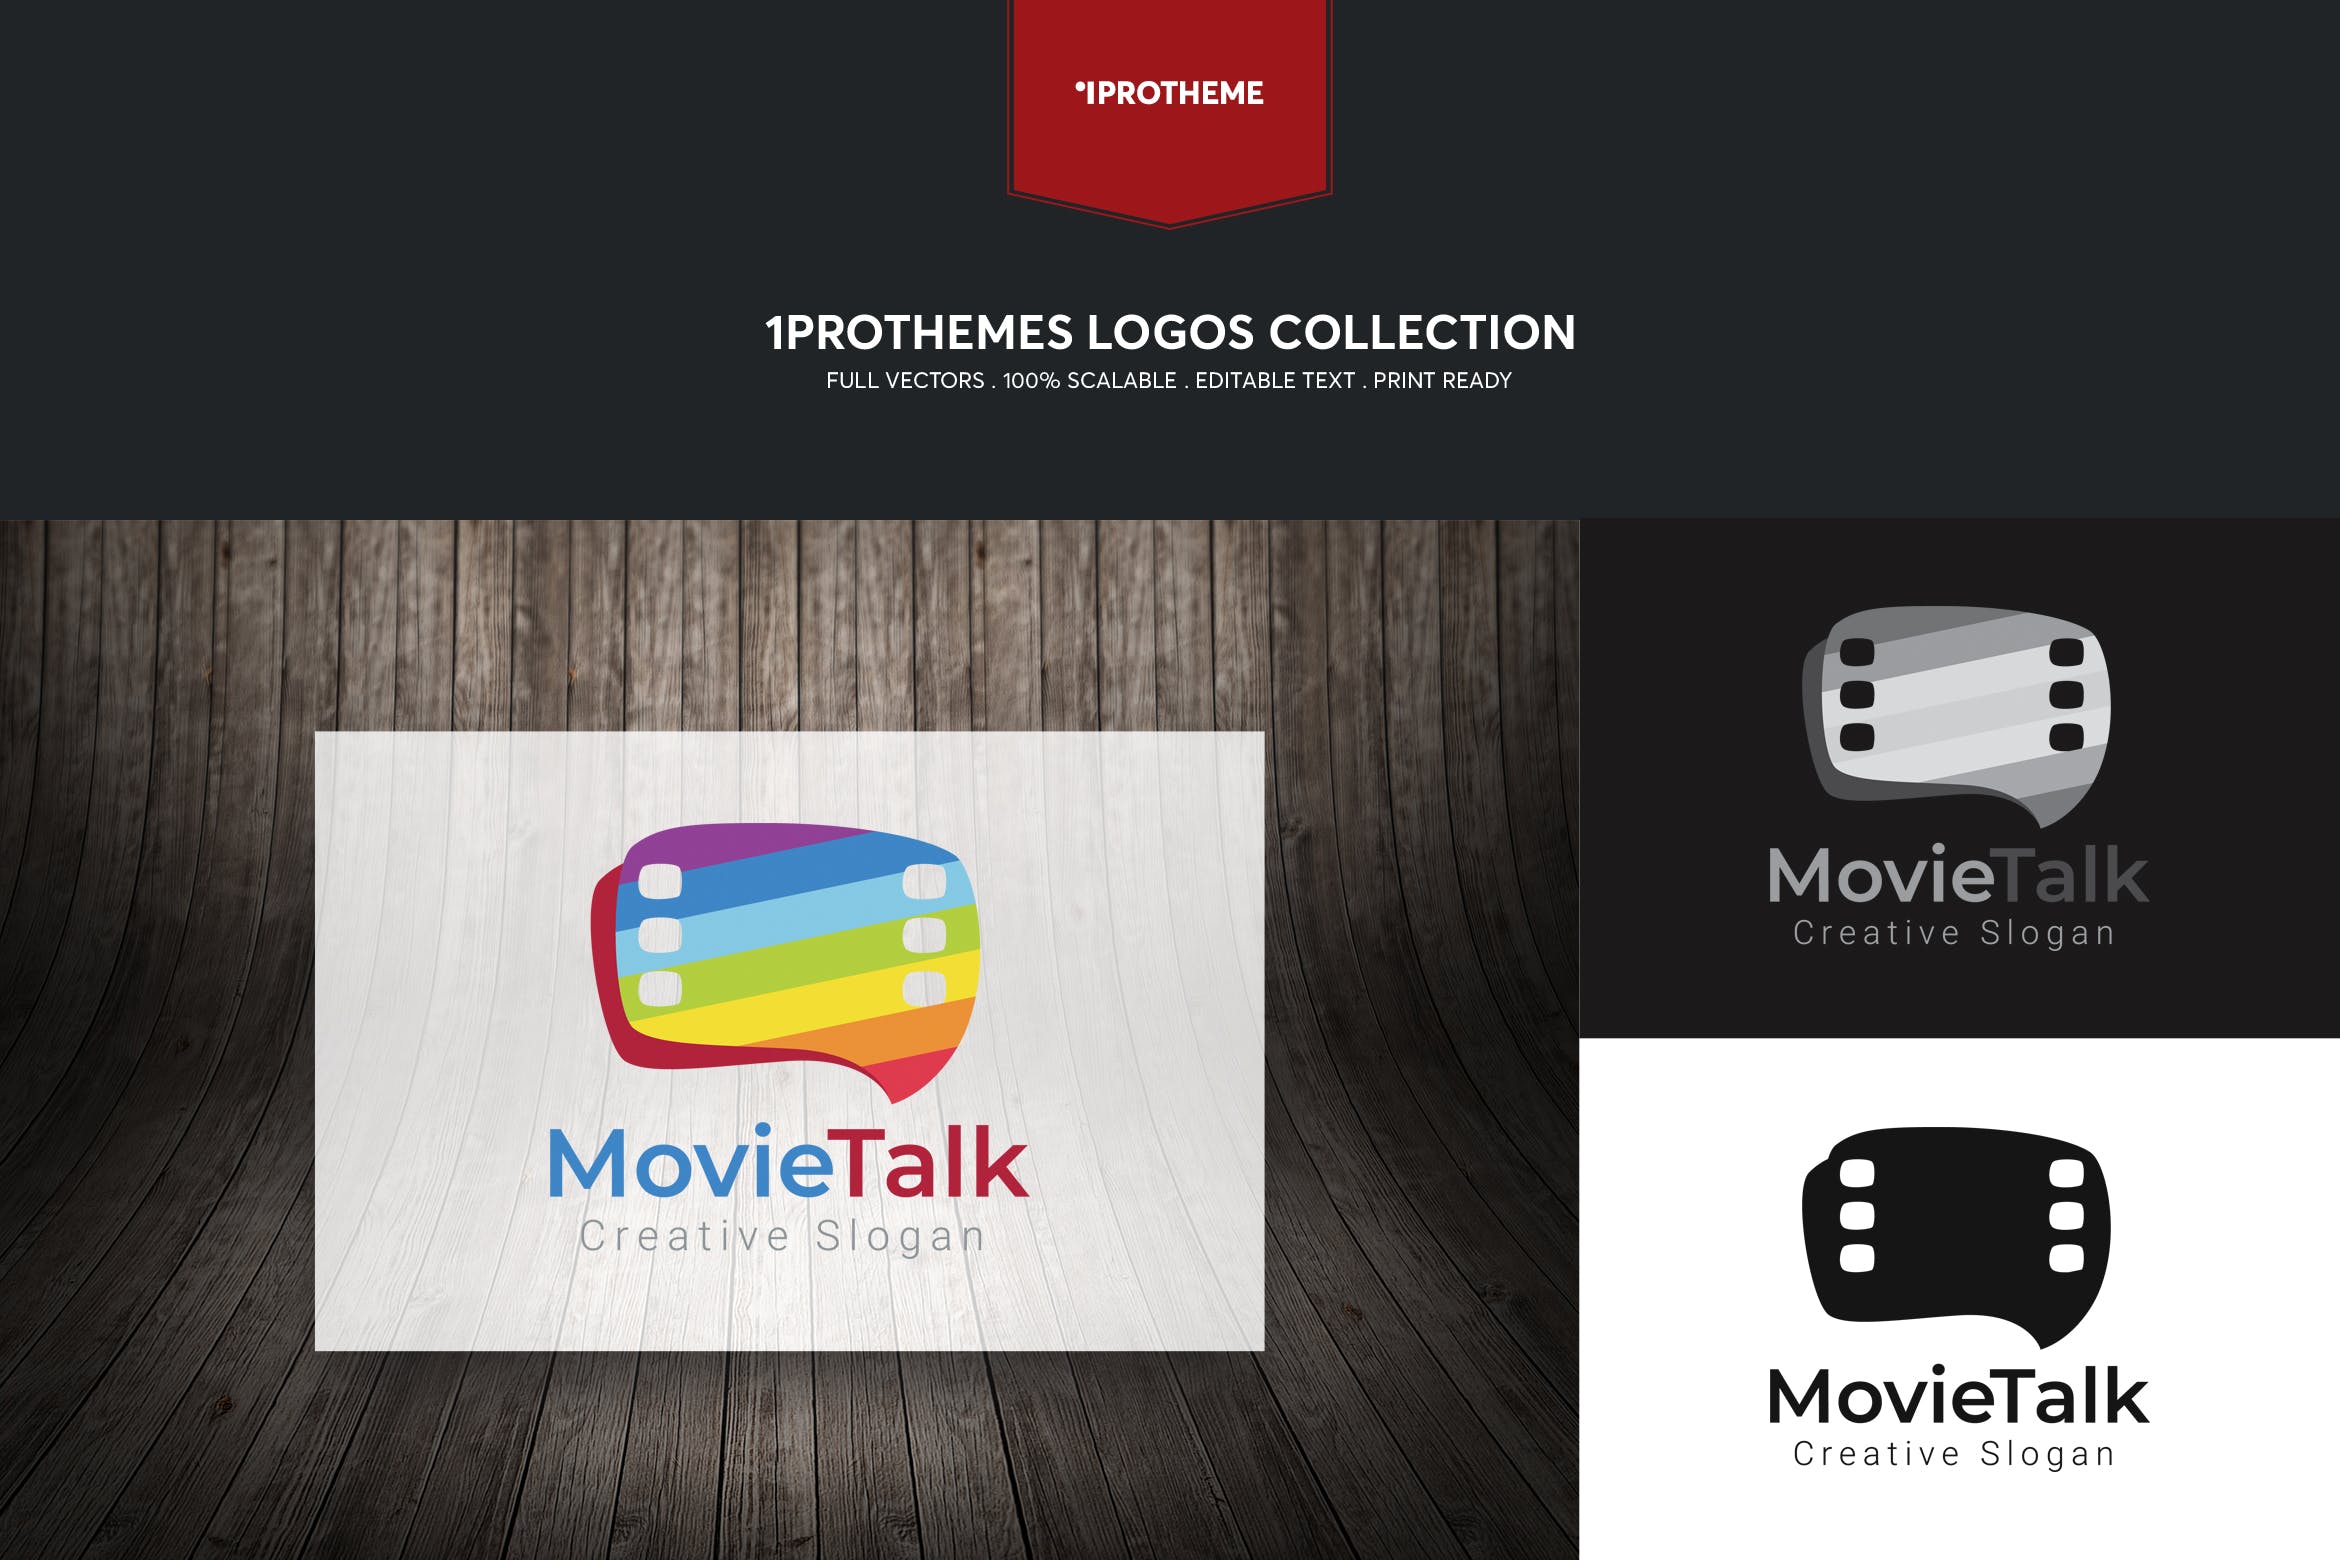 影评电影主题Logo设计素材库精选模板 Movie Talk Logo Template插图